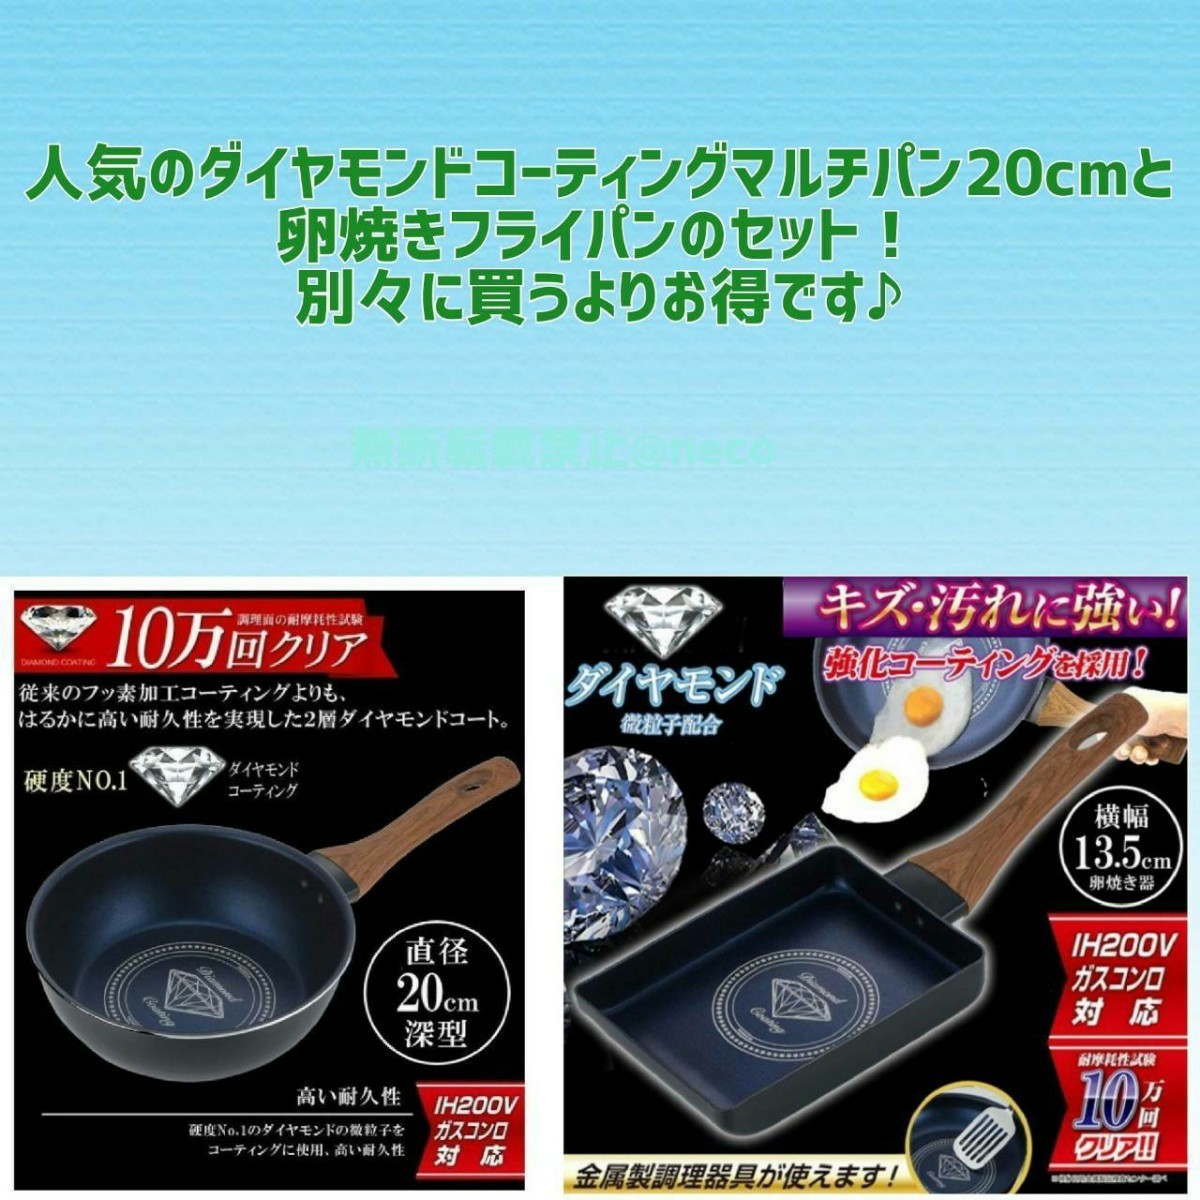 【お得!】ダイヤモンドコーティングマルチパン20cm＆卵焼きフライパンセット